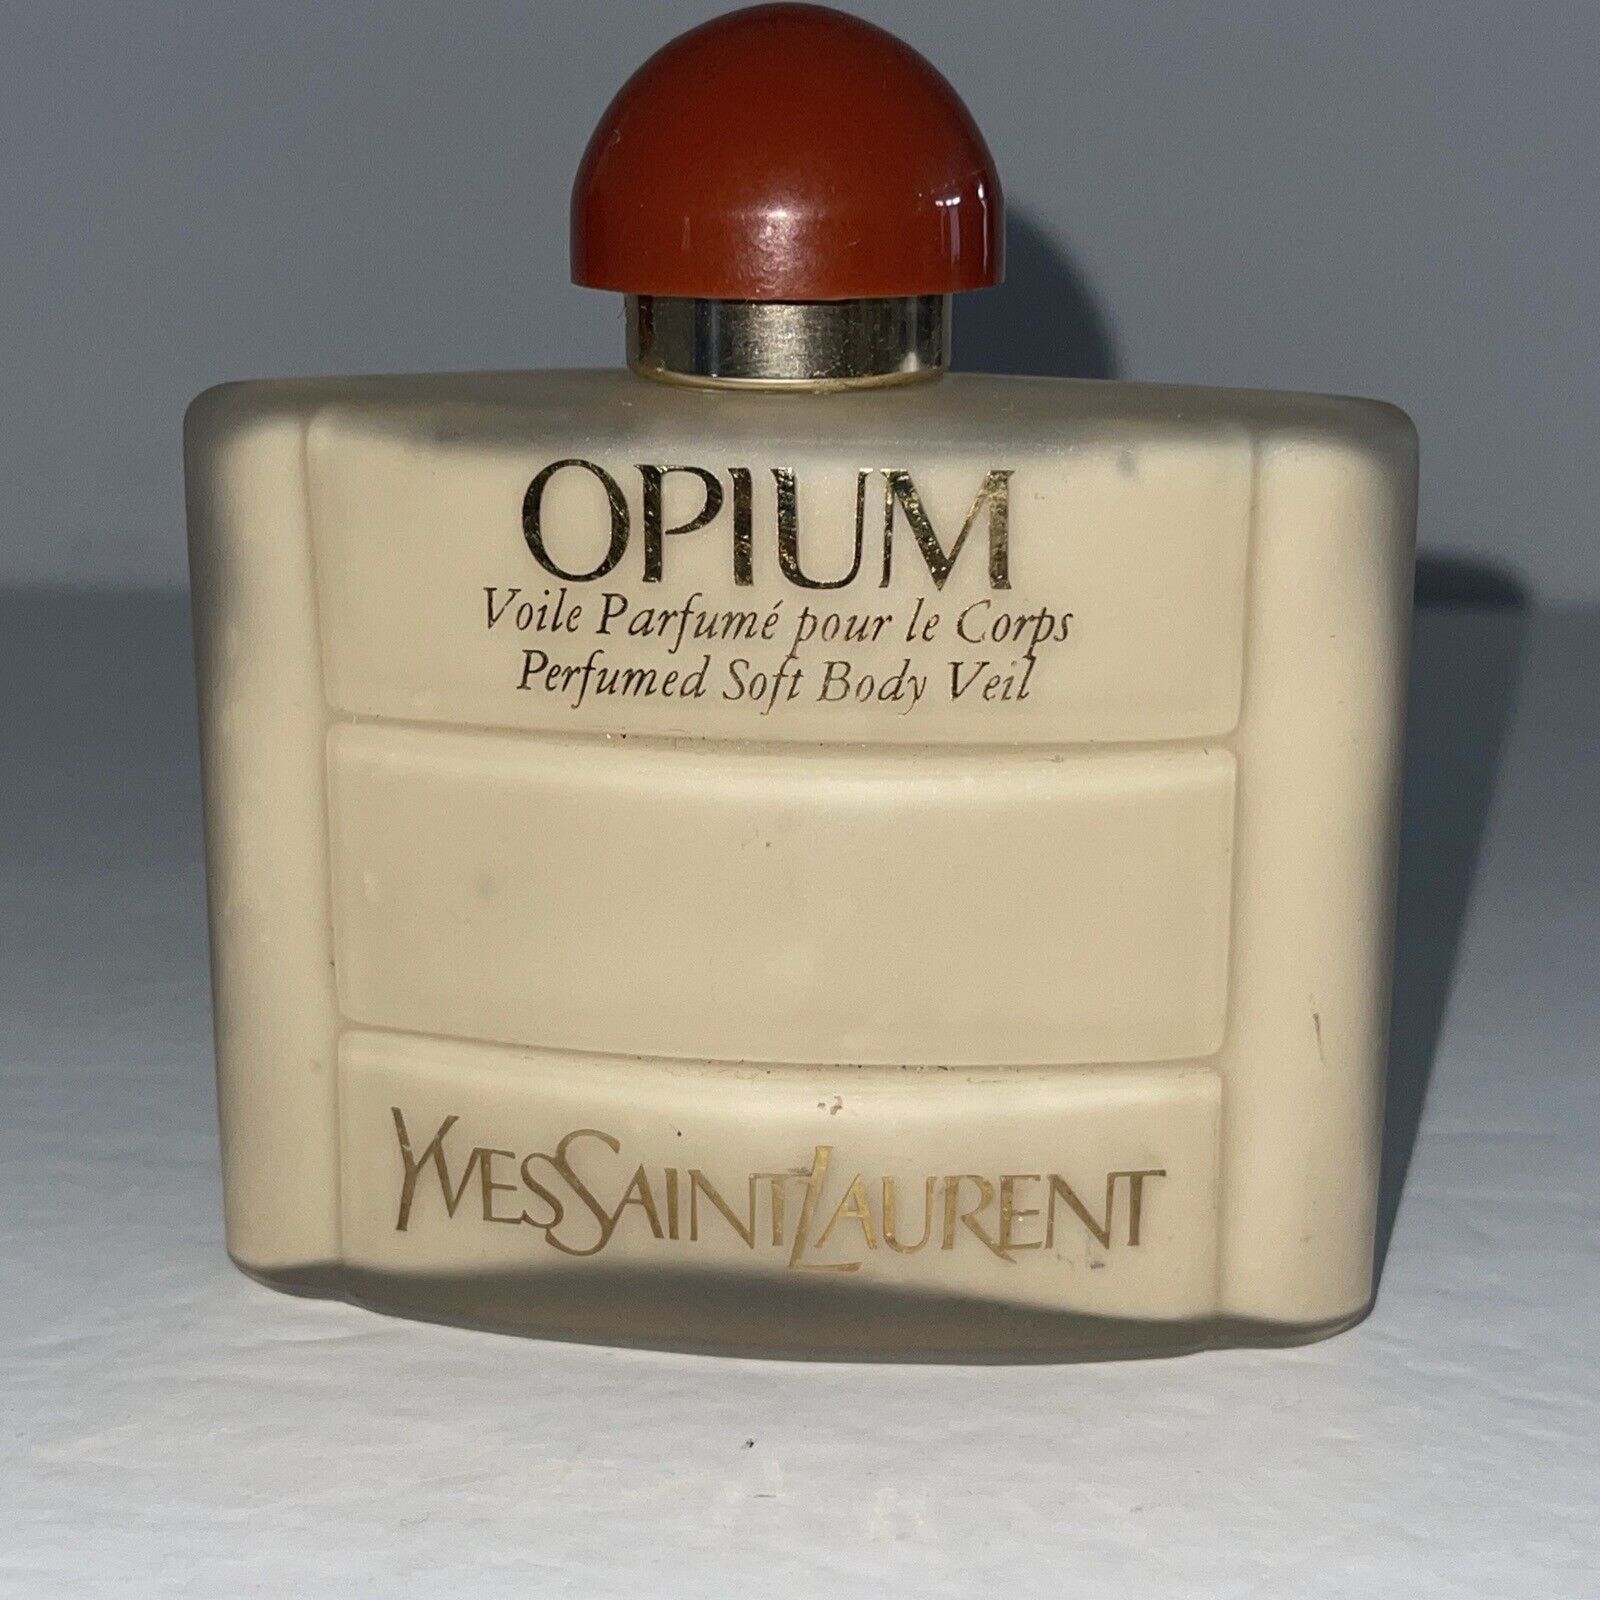 Yves Saint Laurent Opium Perfumed Soft Body Veil For Women 4 oz / 120 ml